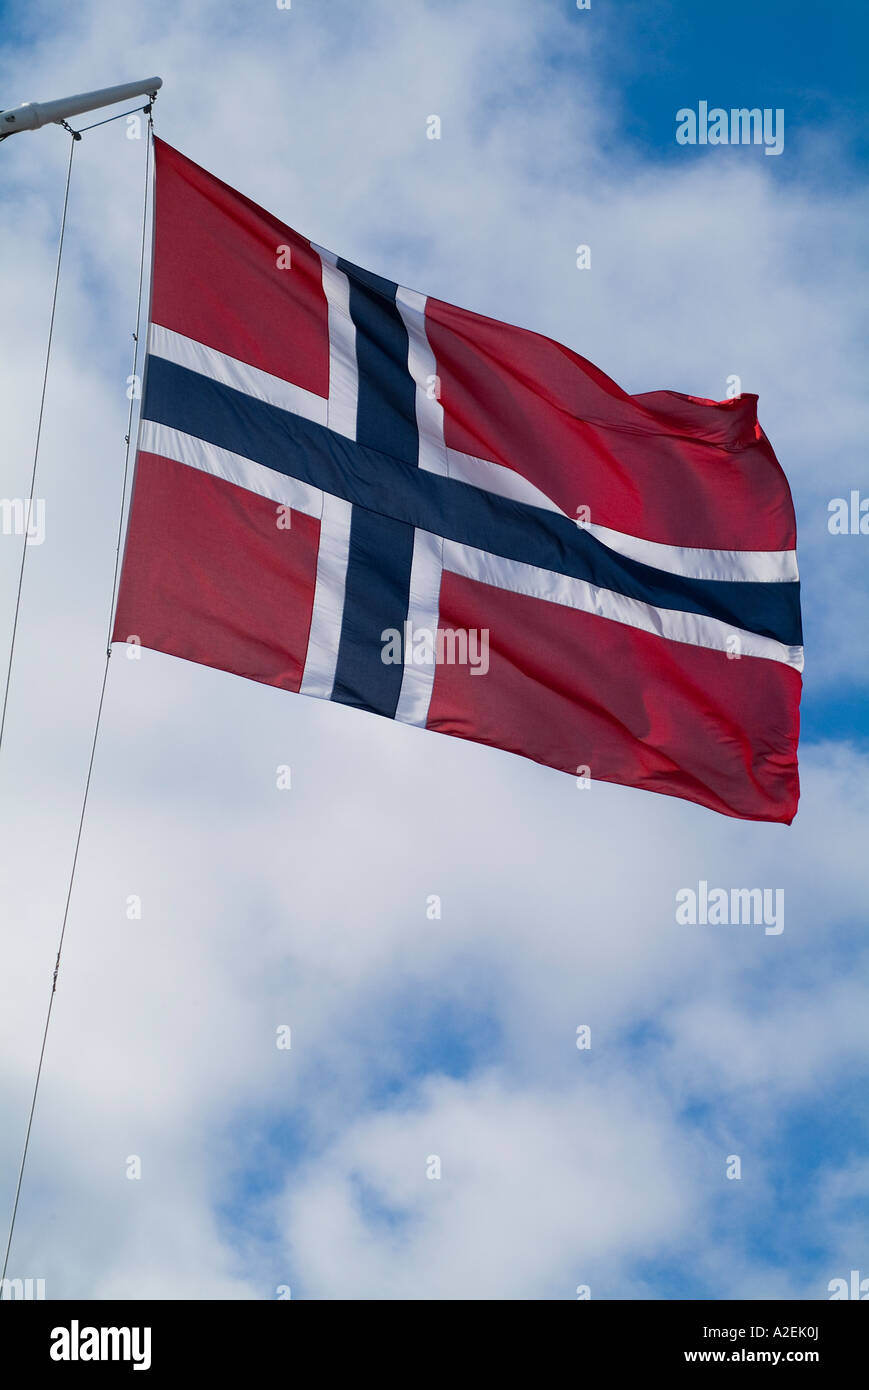 dh drapeau norvégien DRAPEAU NORVÉGIEN NORVÈGE à bord d'un navire à voile norme des navires Ensign Banque D'Images